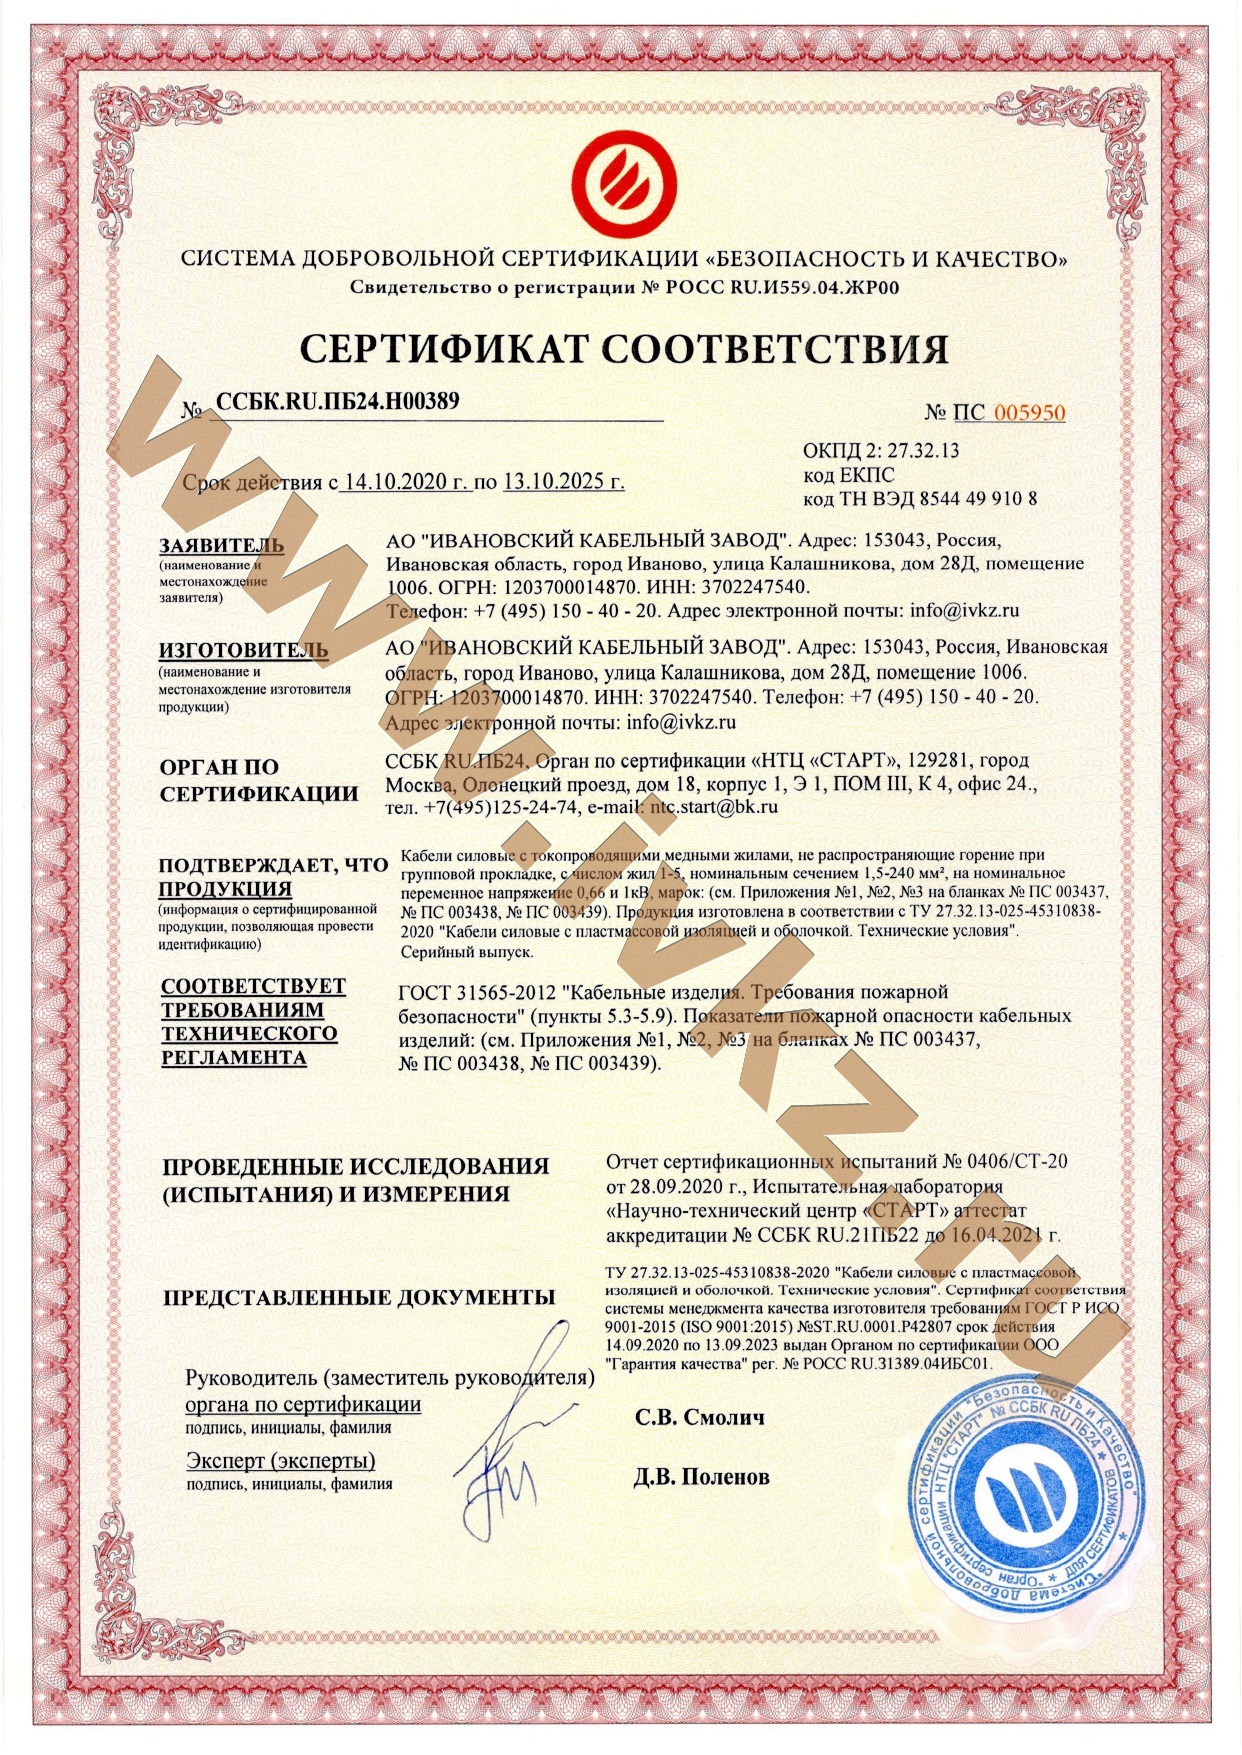 Не распространяющий горение при групповой прокладке. Сертификат на кабель ПВВГНГ(В). Ф 1.1 класс функциональной пожарной опасности.